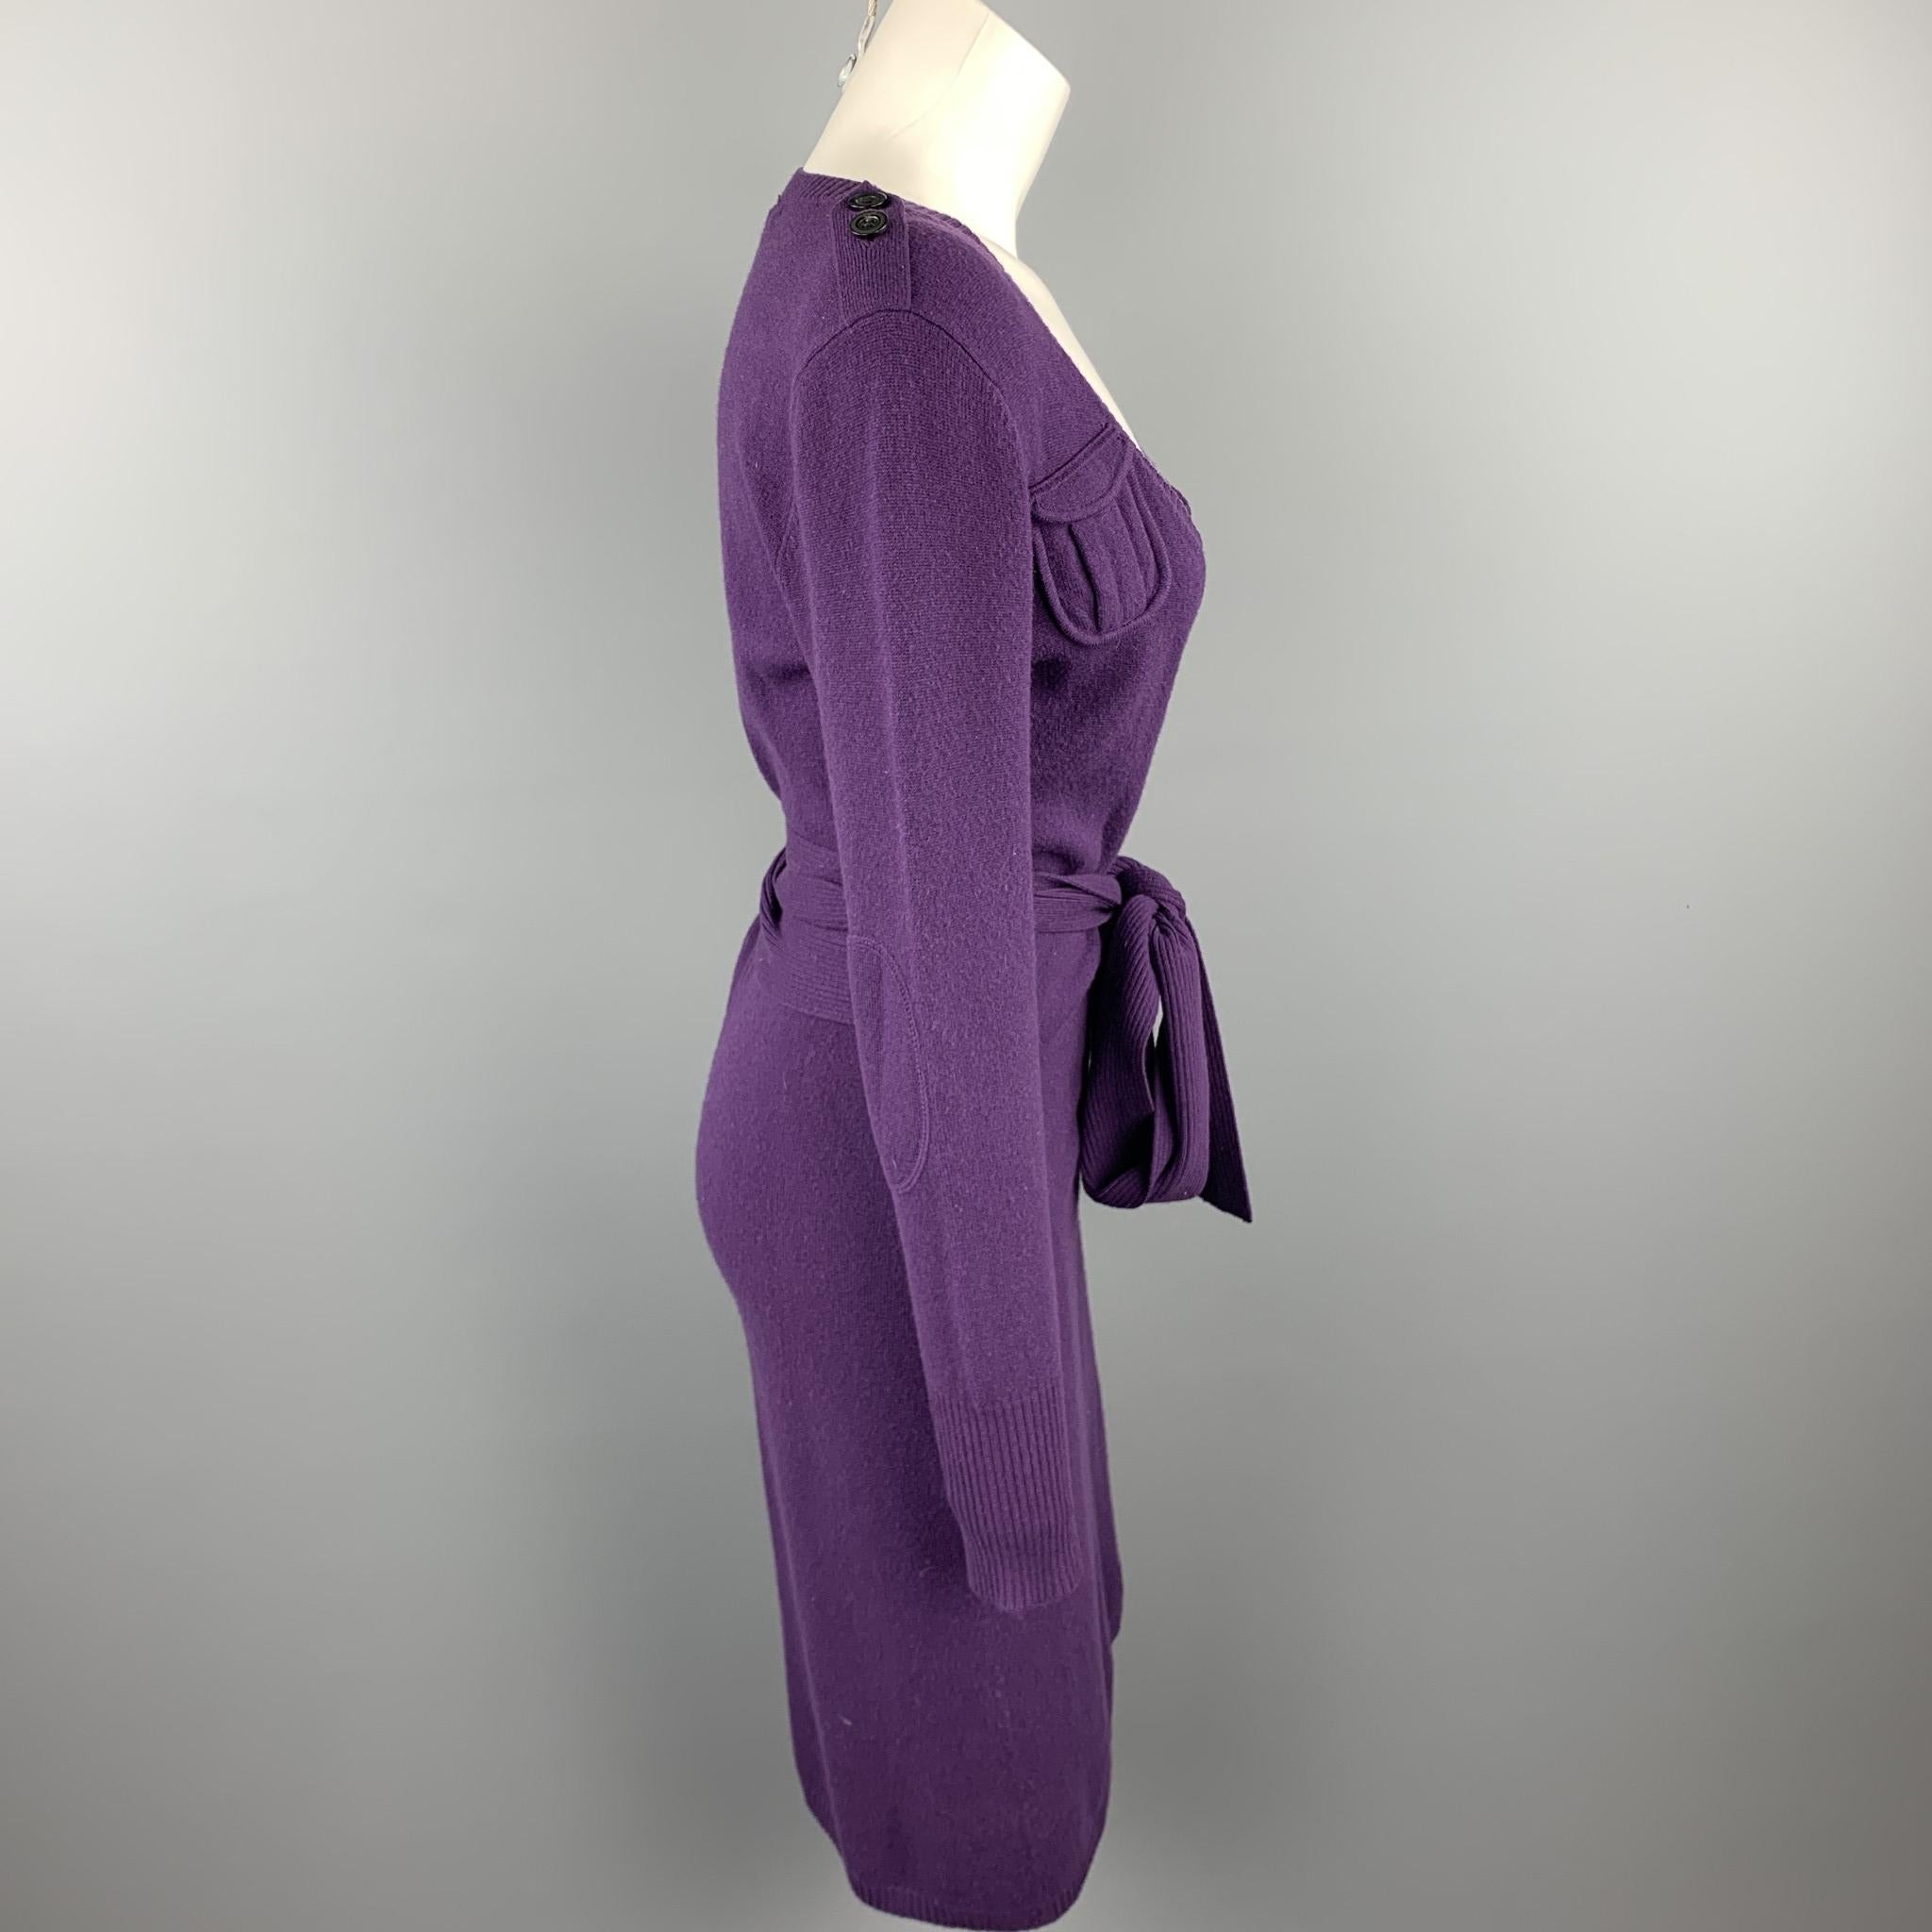 diane von furstenberg purple dress